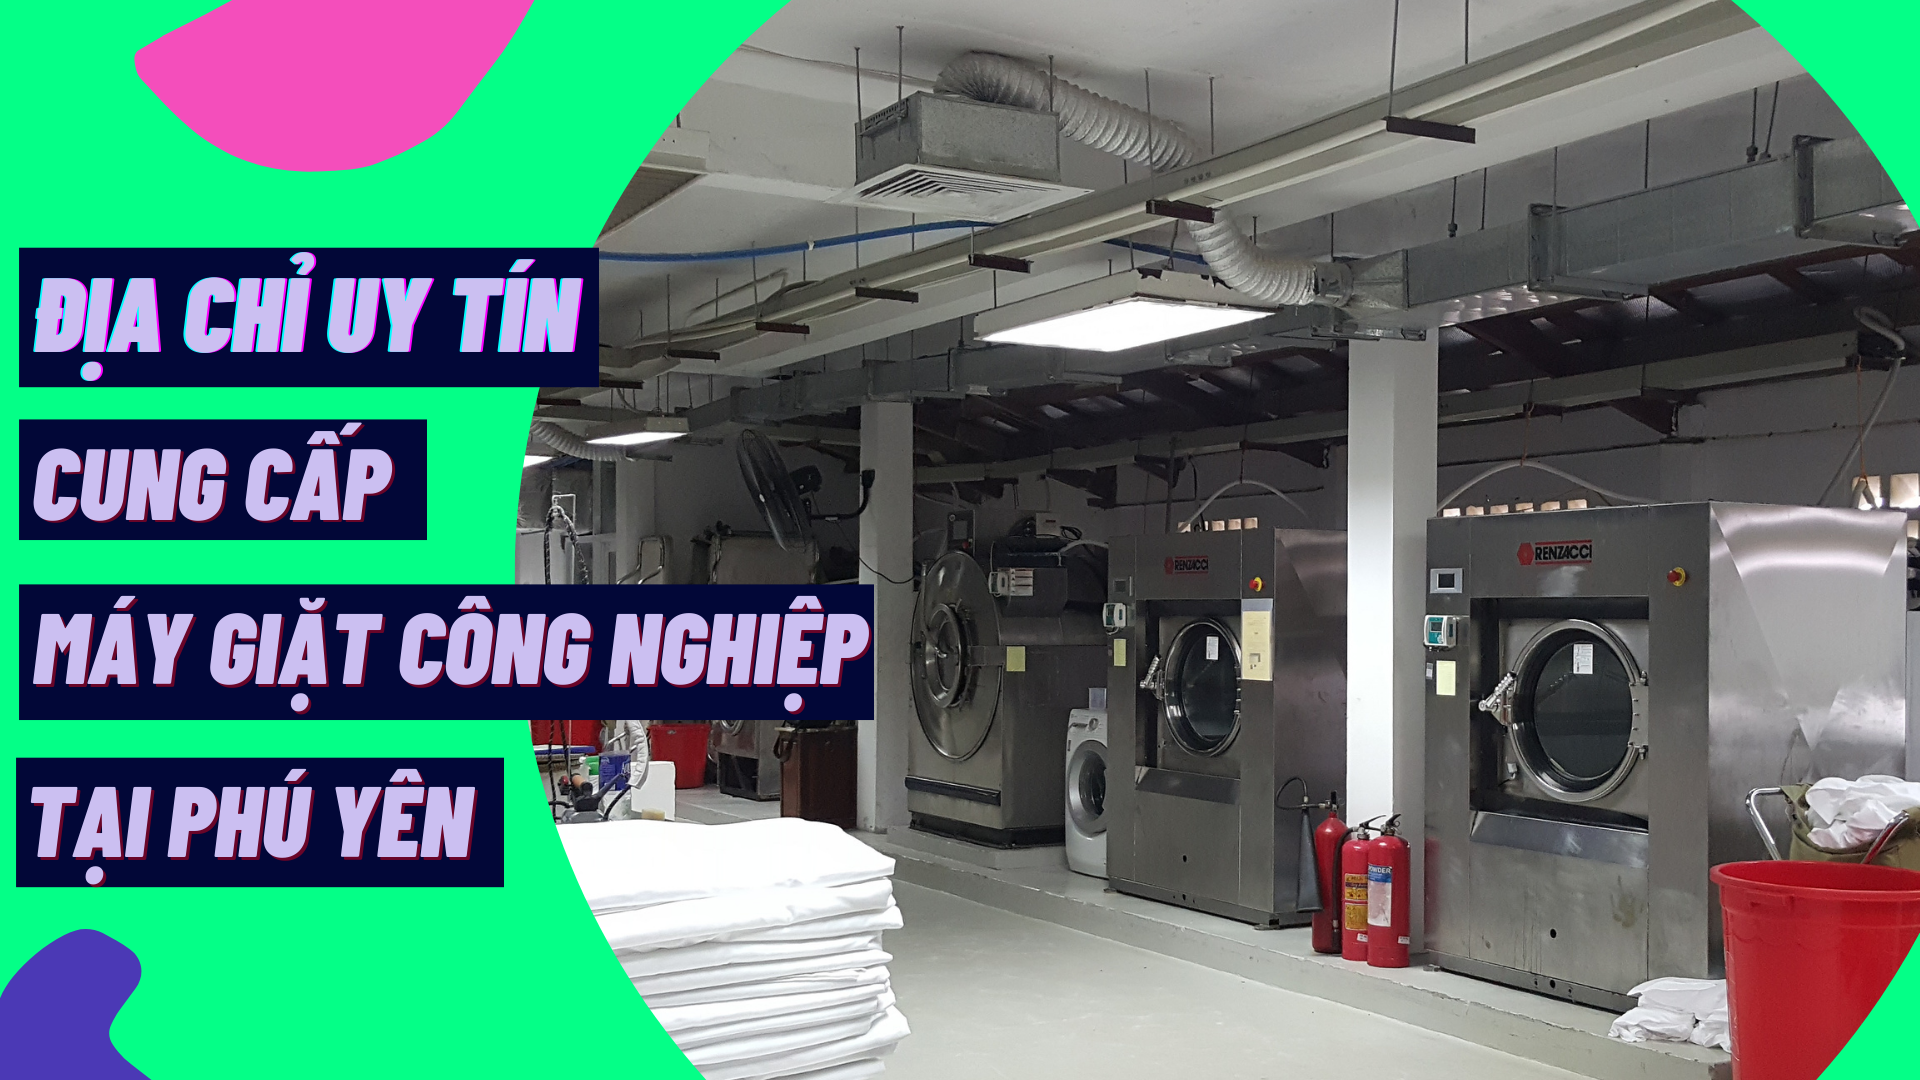 Địa chỉ uy tín cung cấp máy giặt công nghiệp tại Phú Yên